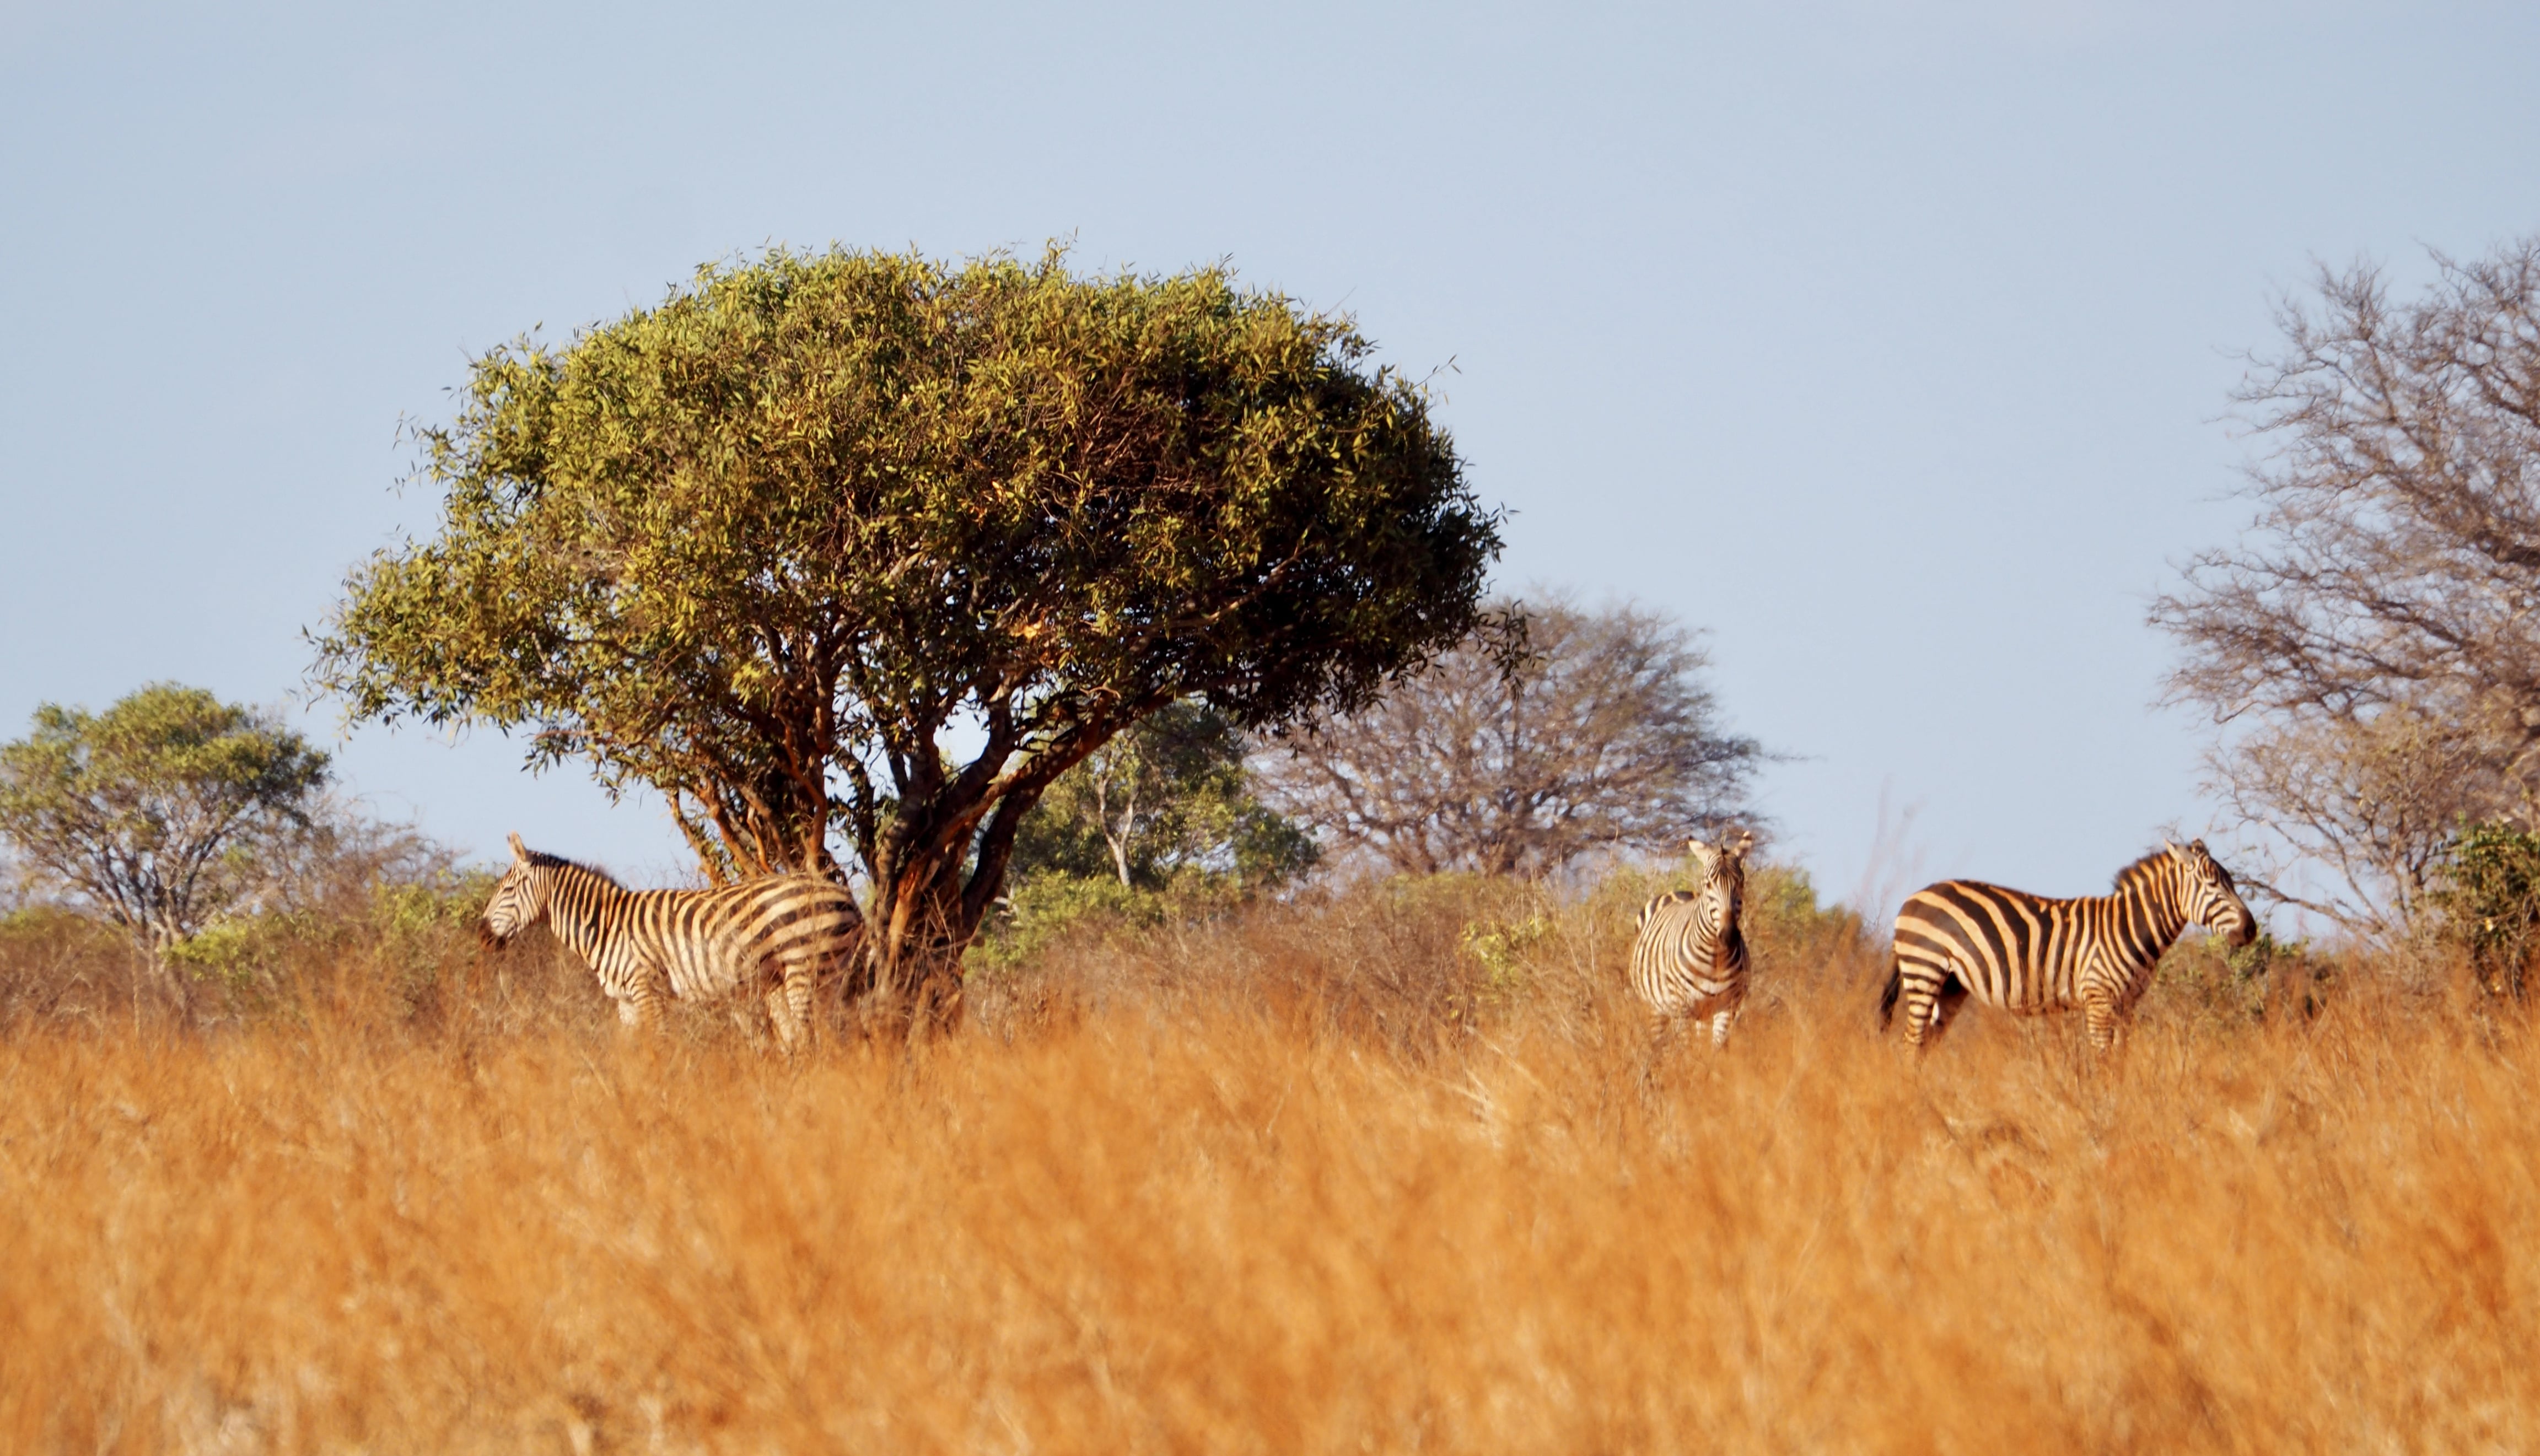 Zebras watching over